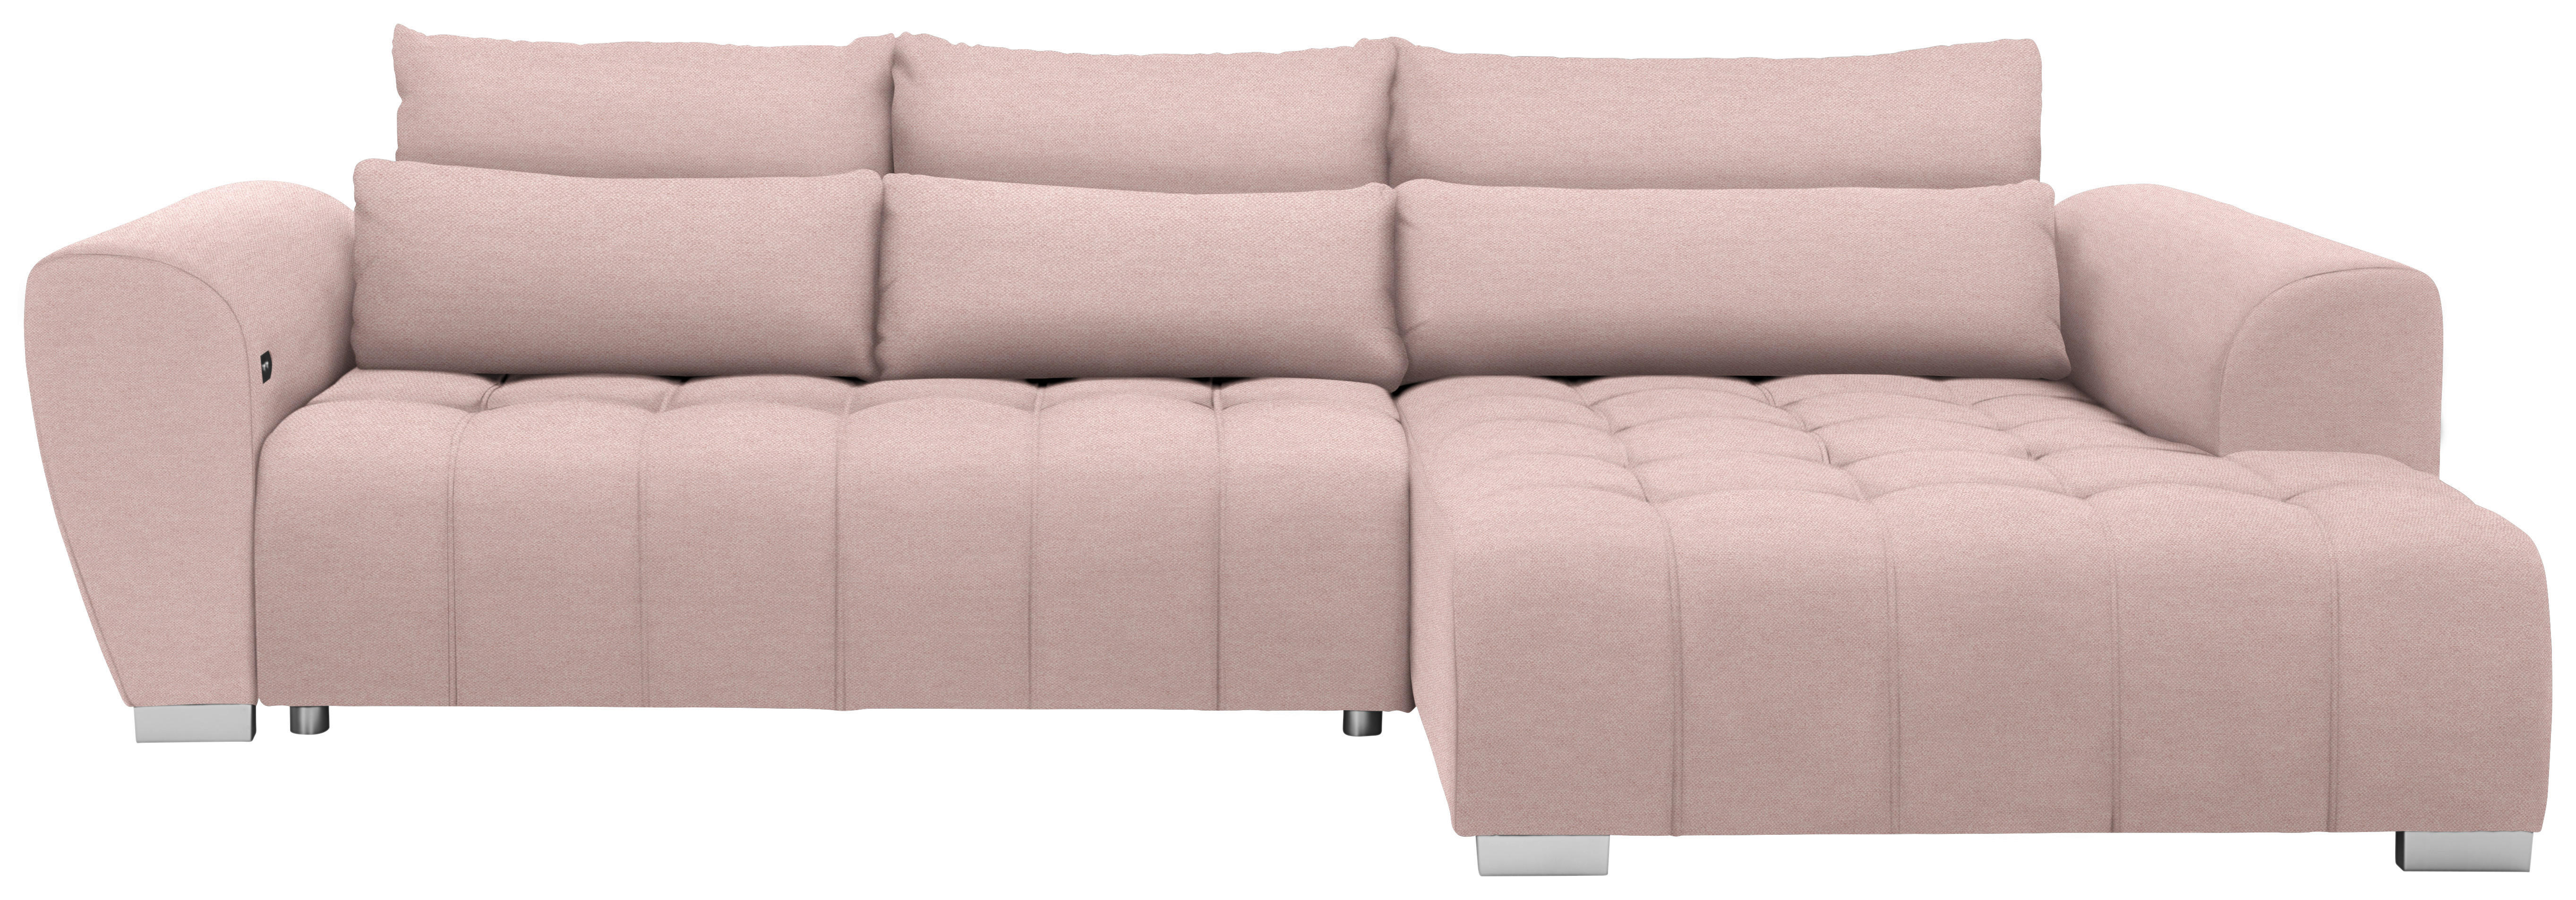 ECKSOFA in Webstoff Rosa  - Silberfarben/Rosa, MODERN, Kunststoff/Textil (304/218cm) - Carryhome